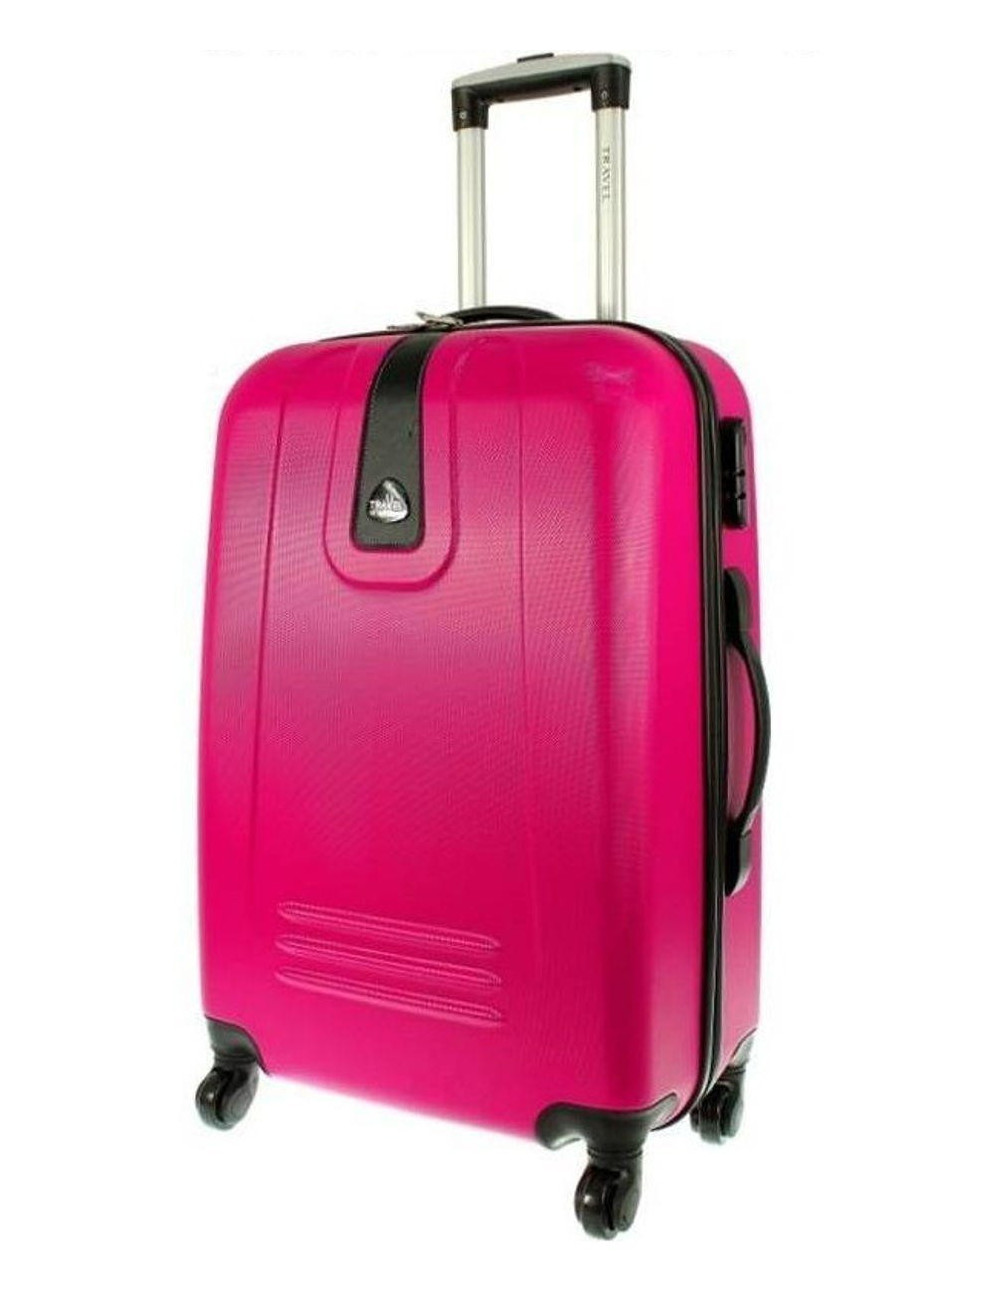 Mała  walizka podróżna 910 M - Różowa